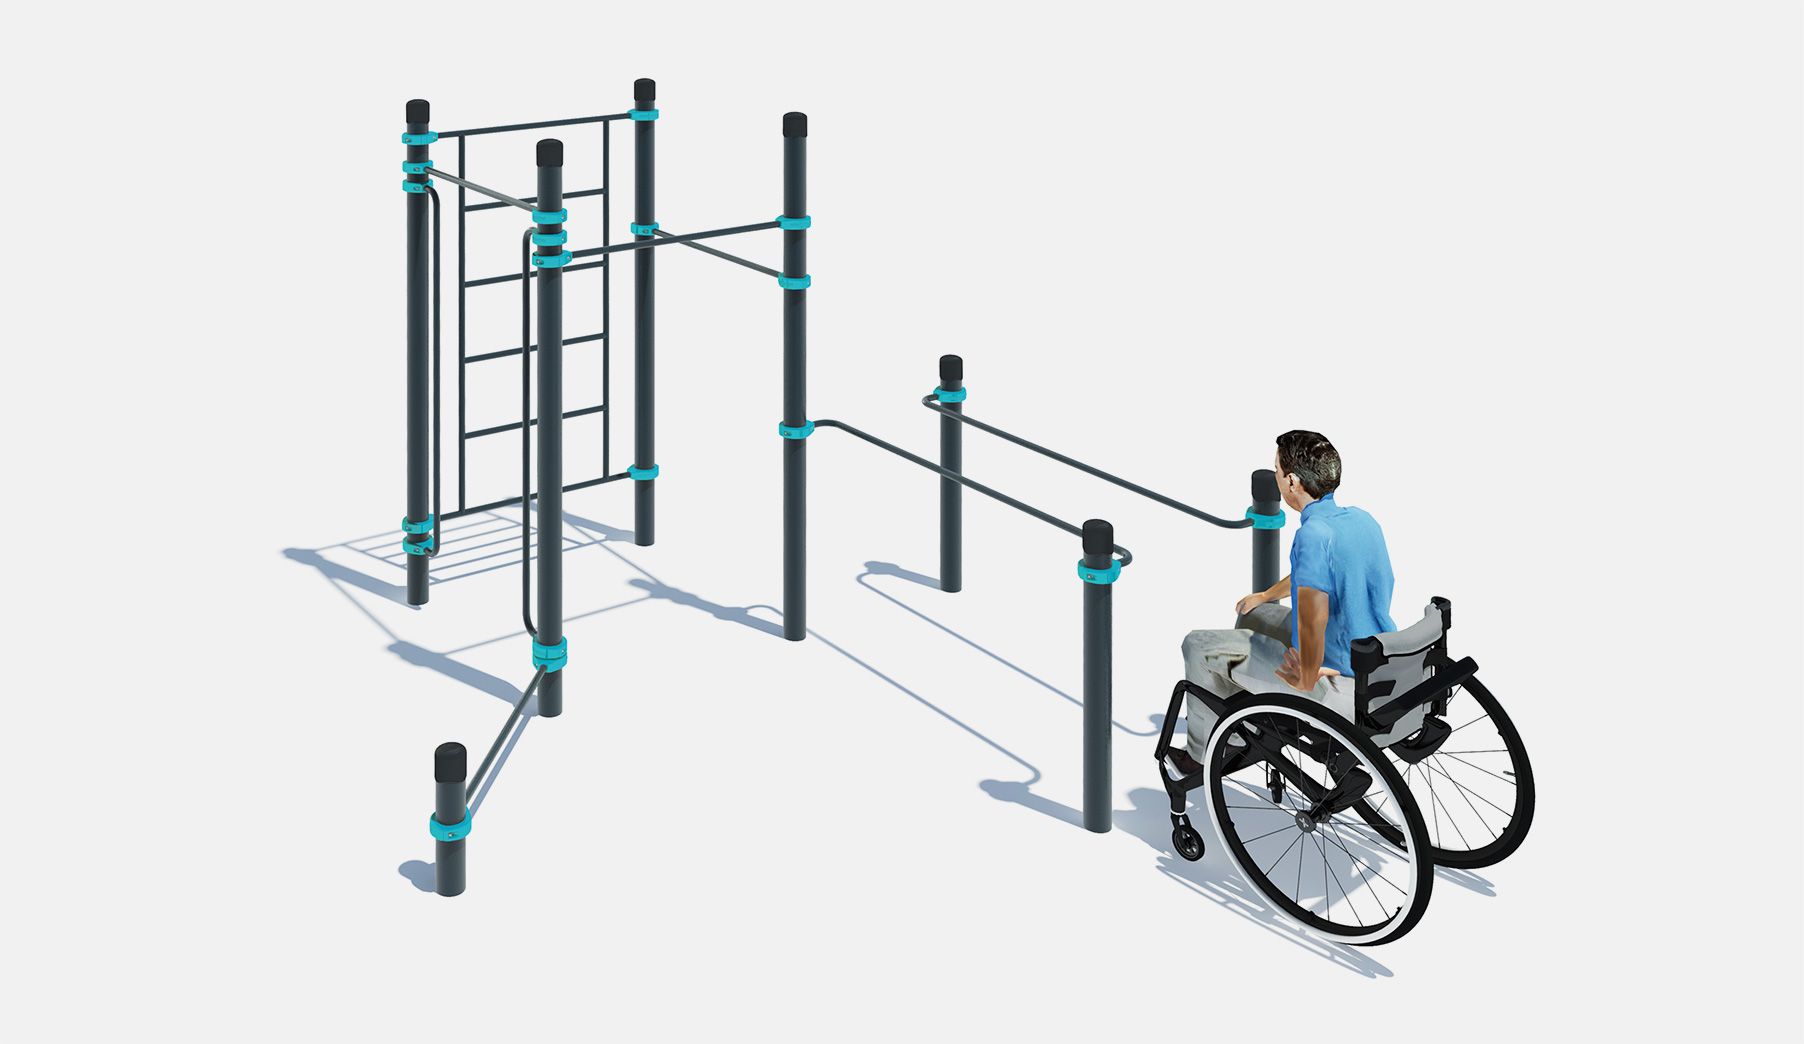 Сбор пд. Воркаут комплекс для инвалидов-колясочников. Уличный тренажер для инвалидов ytr001-FS. Брусья параллельные для колясочников. Спортивная площадка для инвалидов PARAKENGURU Lite.